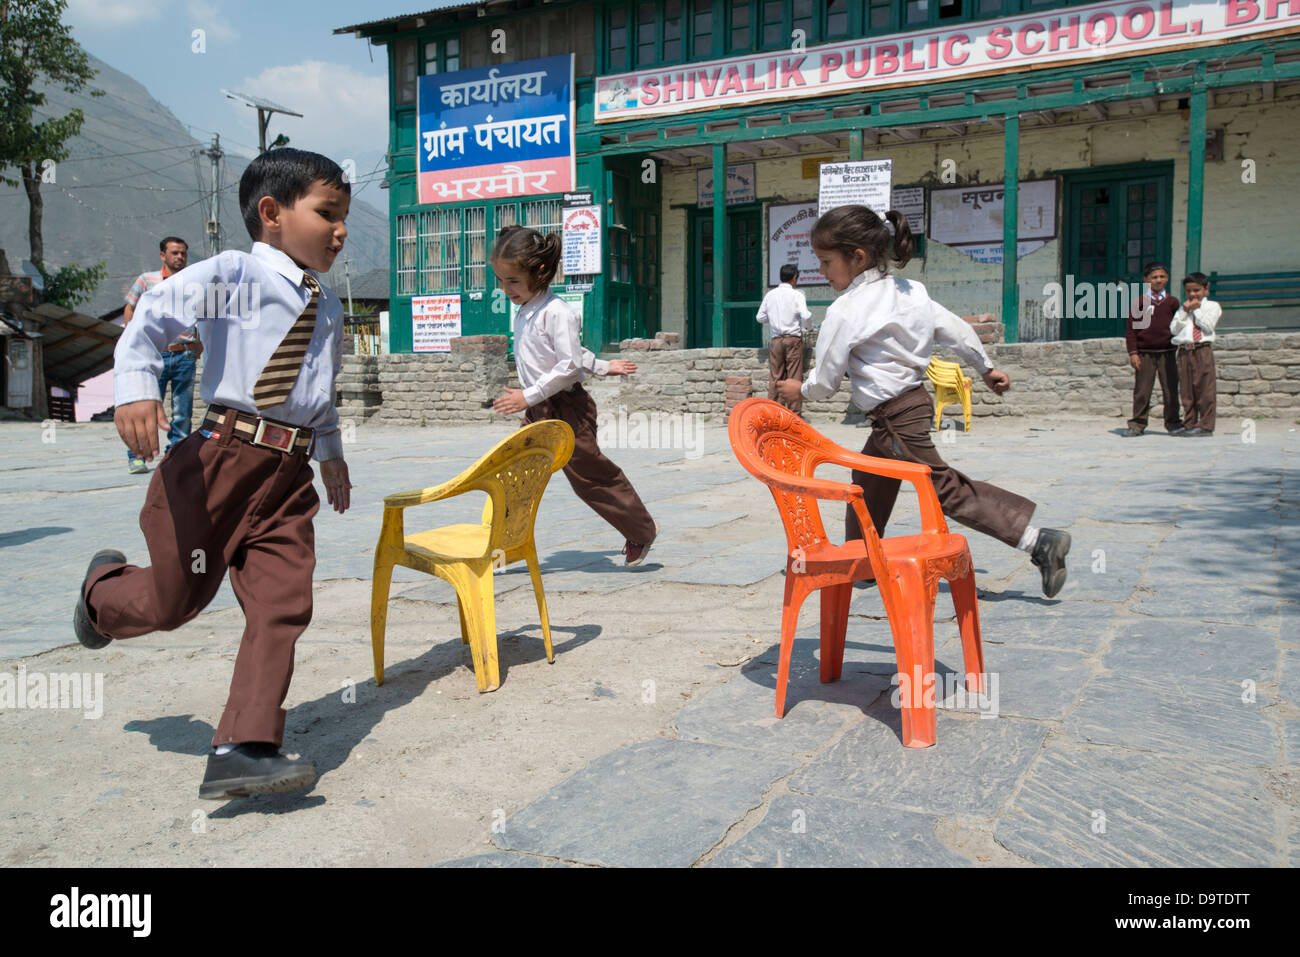 Indian bambini delle scuole elementari un gioco delle sedie musicali nella piazza del villaggio a Bharmour, Himachal Pradesh, India Foto Stock